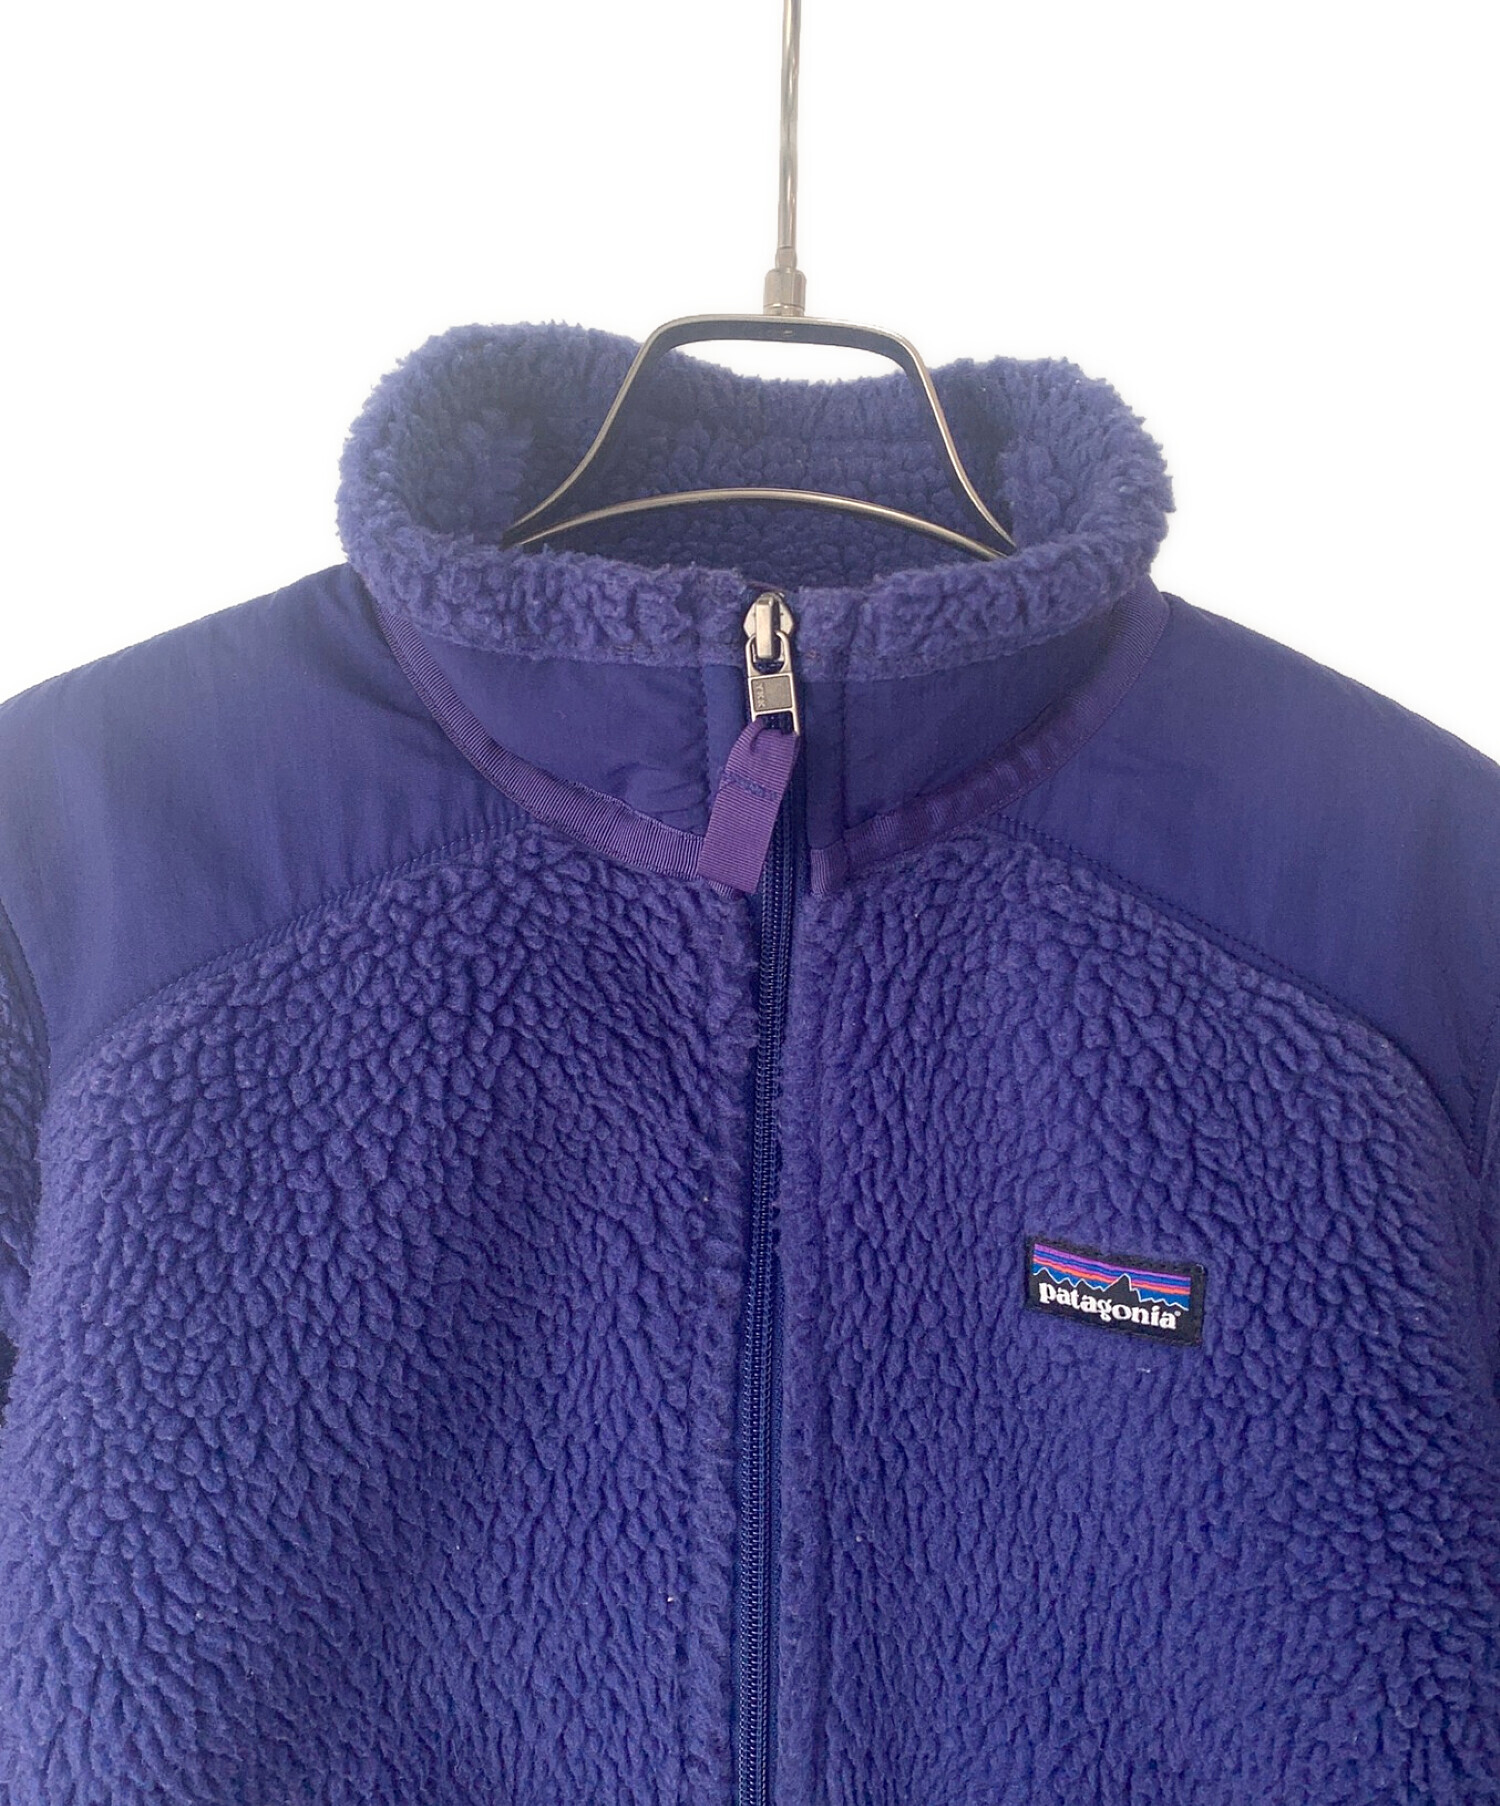 Patagonia (パタゴニア) フリースジャケット ブルー サイズ:M